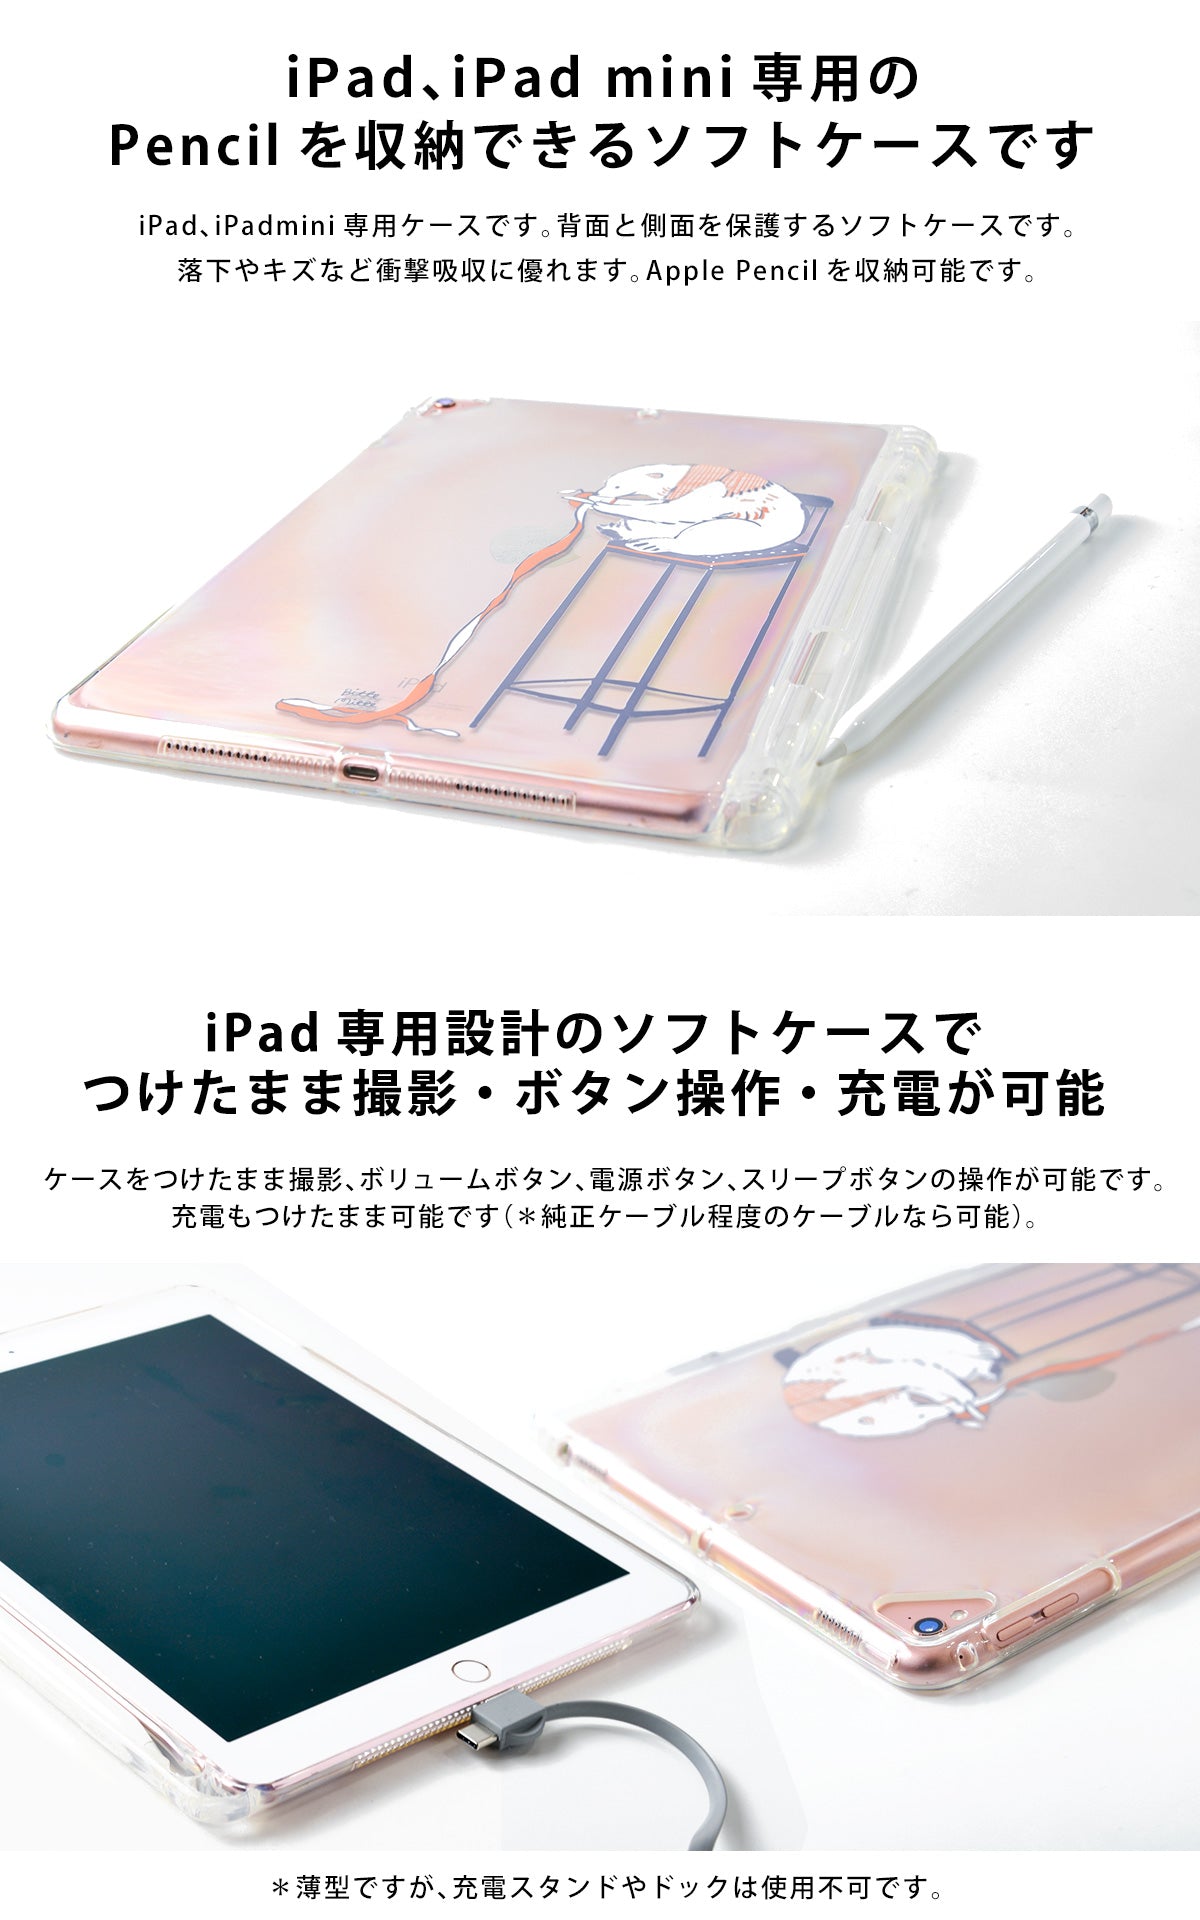 ipadケース かわいい おしゃれ クリア ペン収納付き ペンホルダー アップルペンシル収納